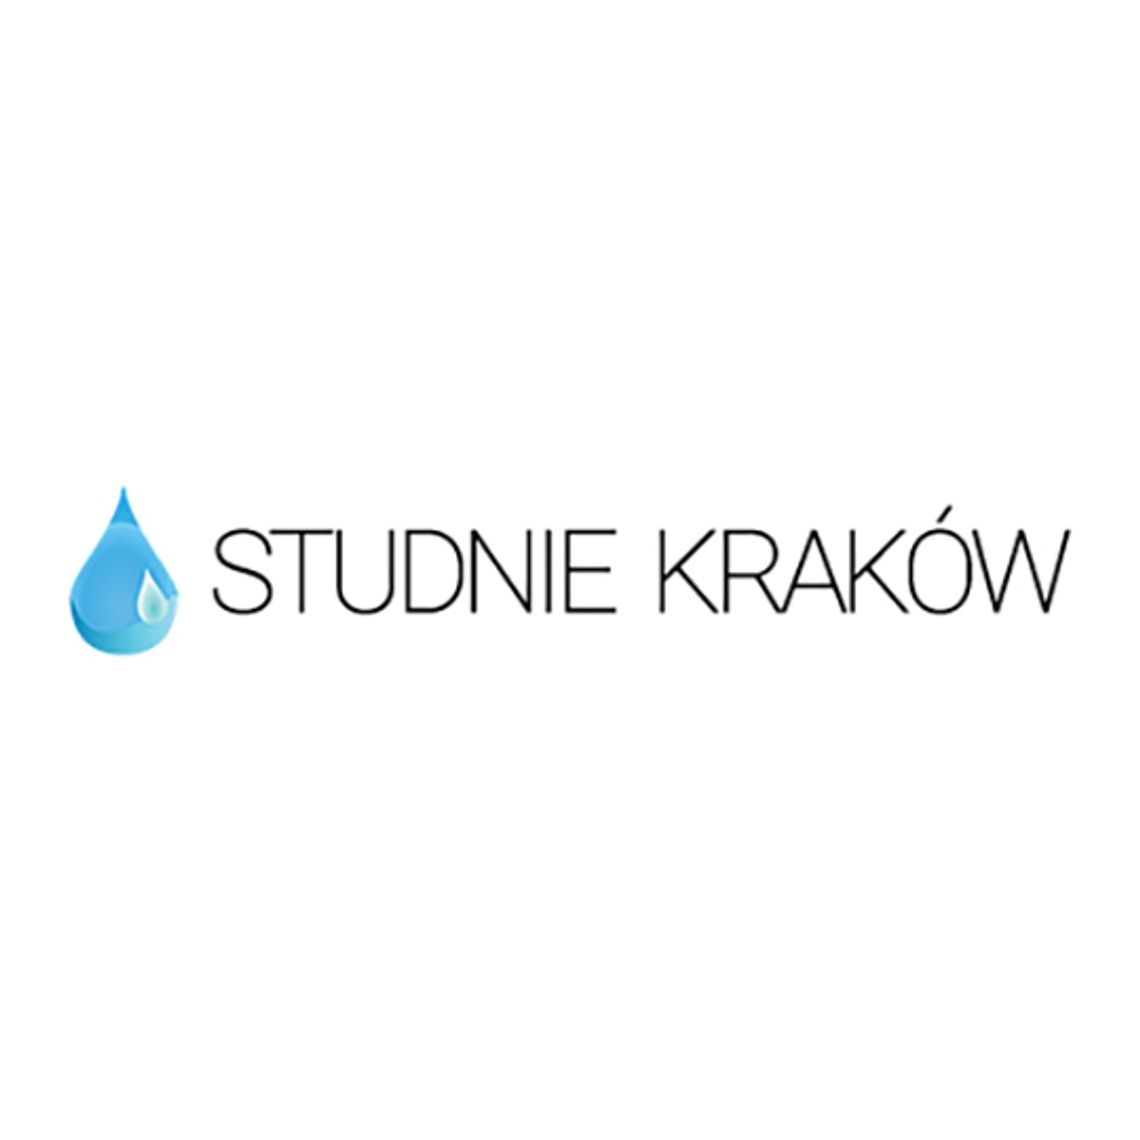 Studnie Kraków - Małopolskie centrum geologiczno-wiertnicze